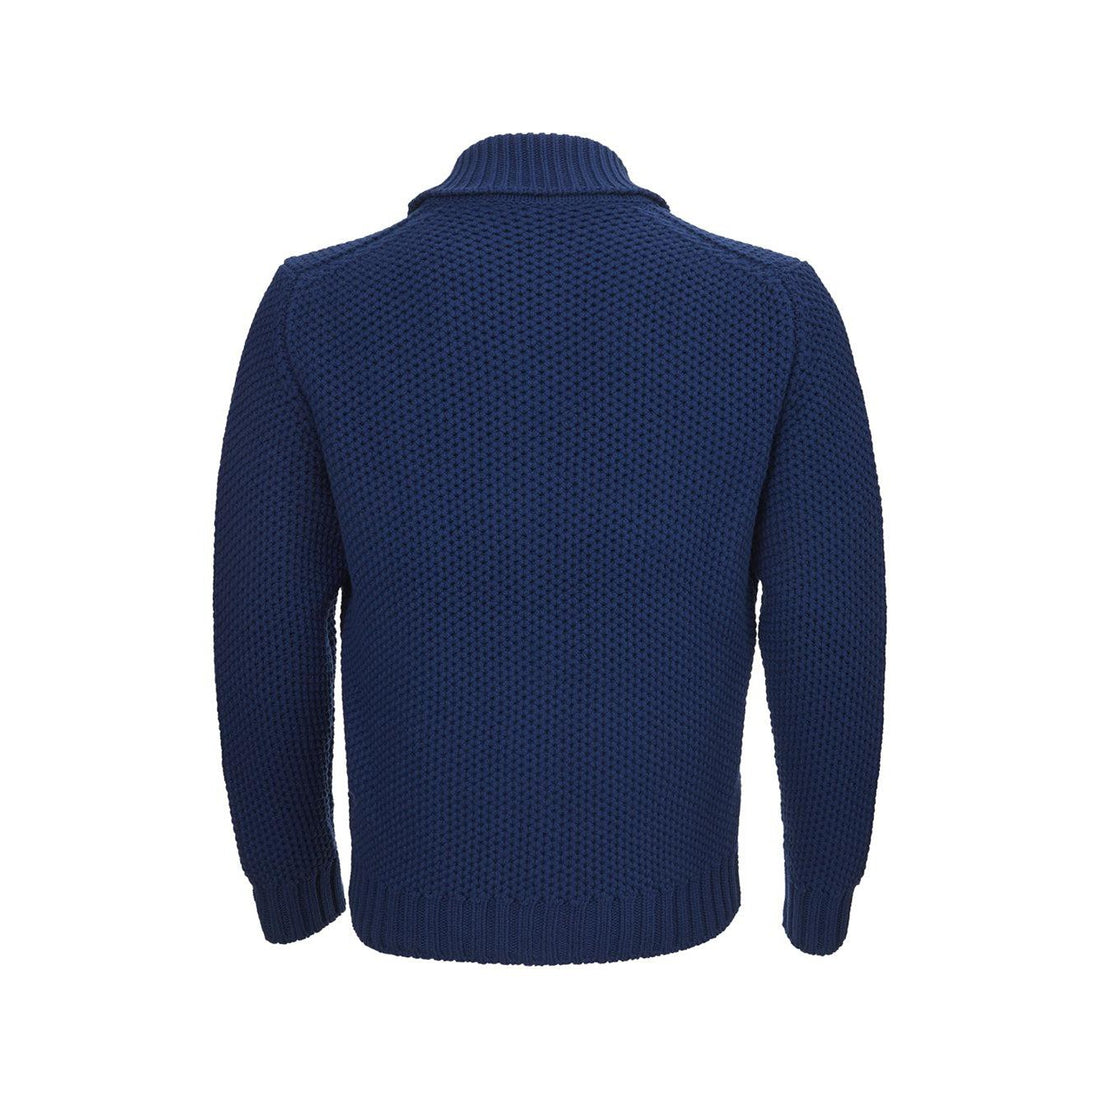 Gran Sasso Wool Blu Sweater with Zip